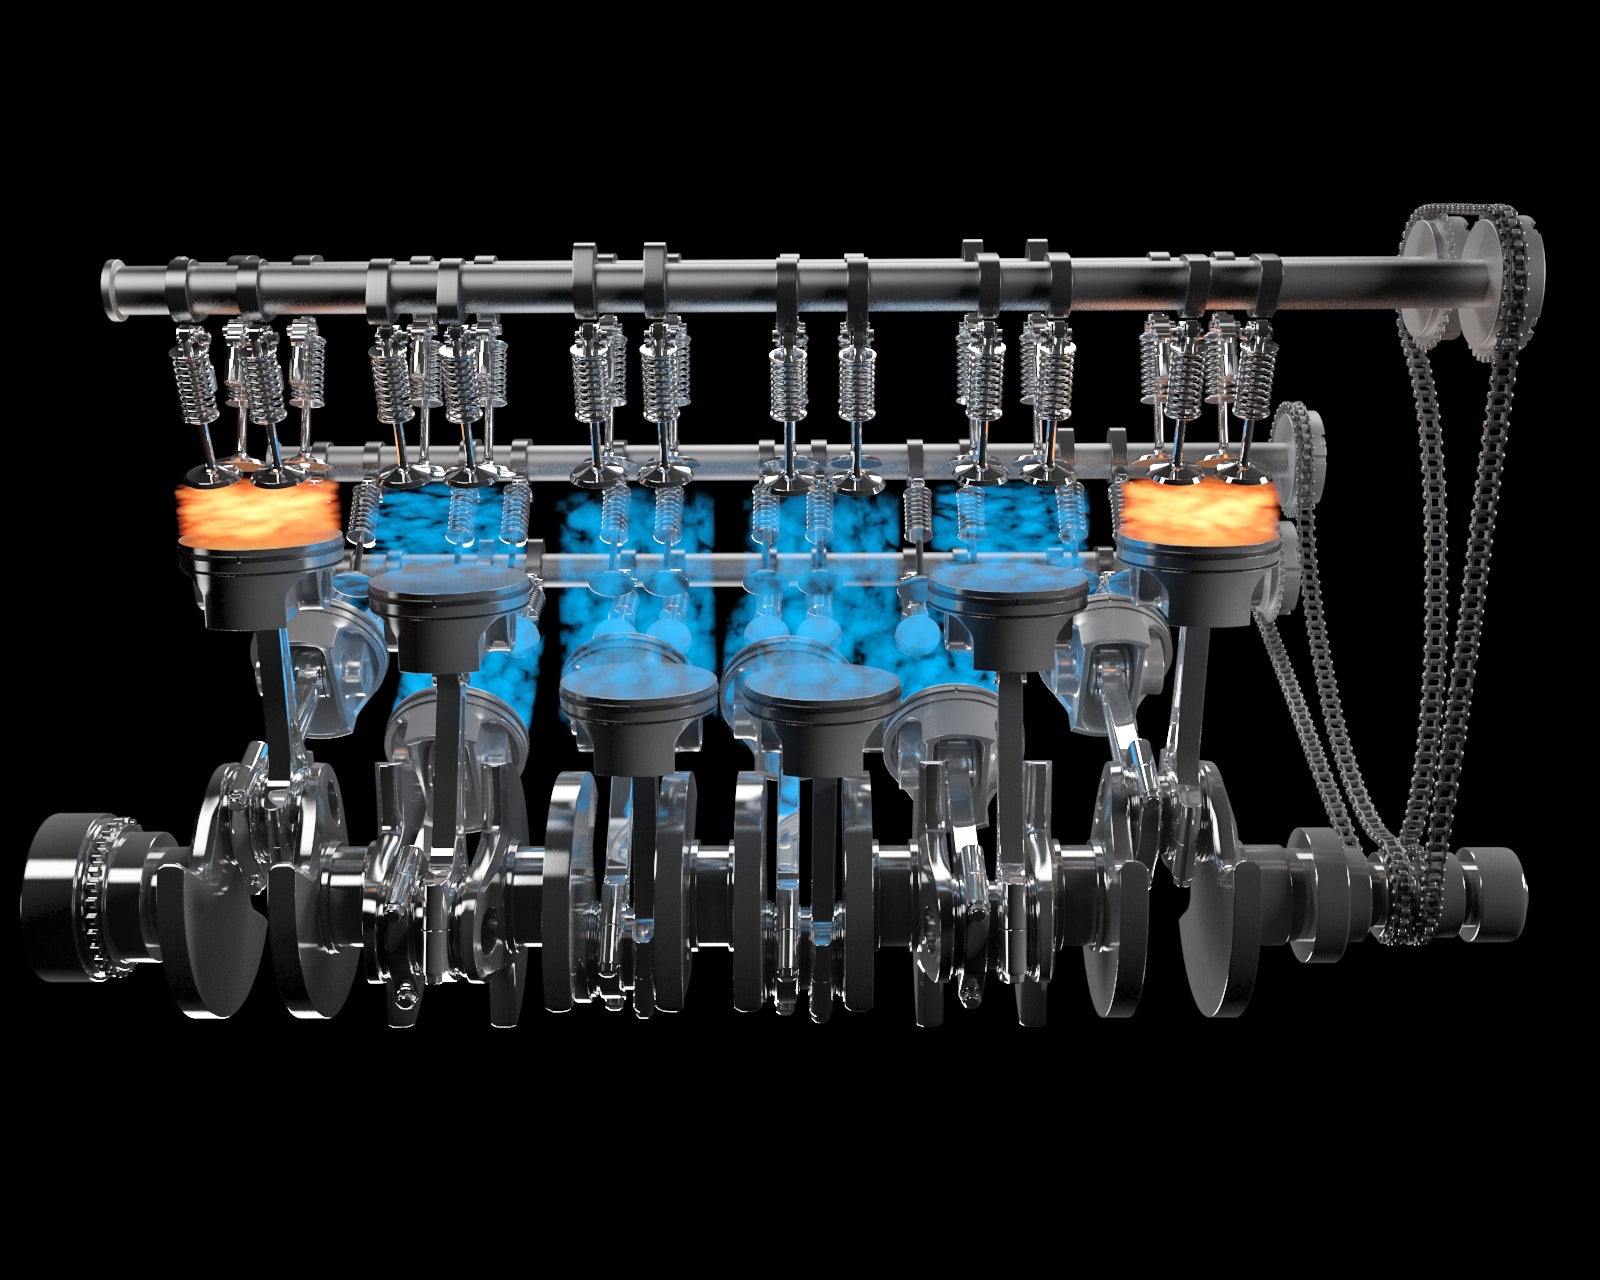 Animated V12 Engine